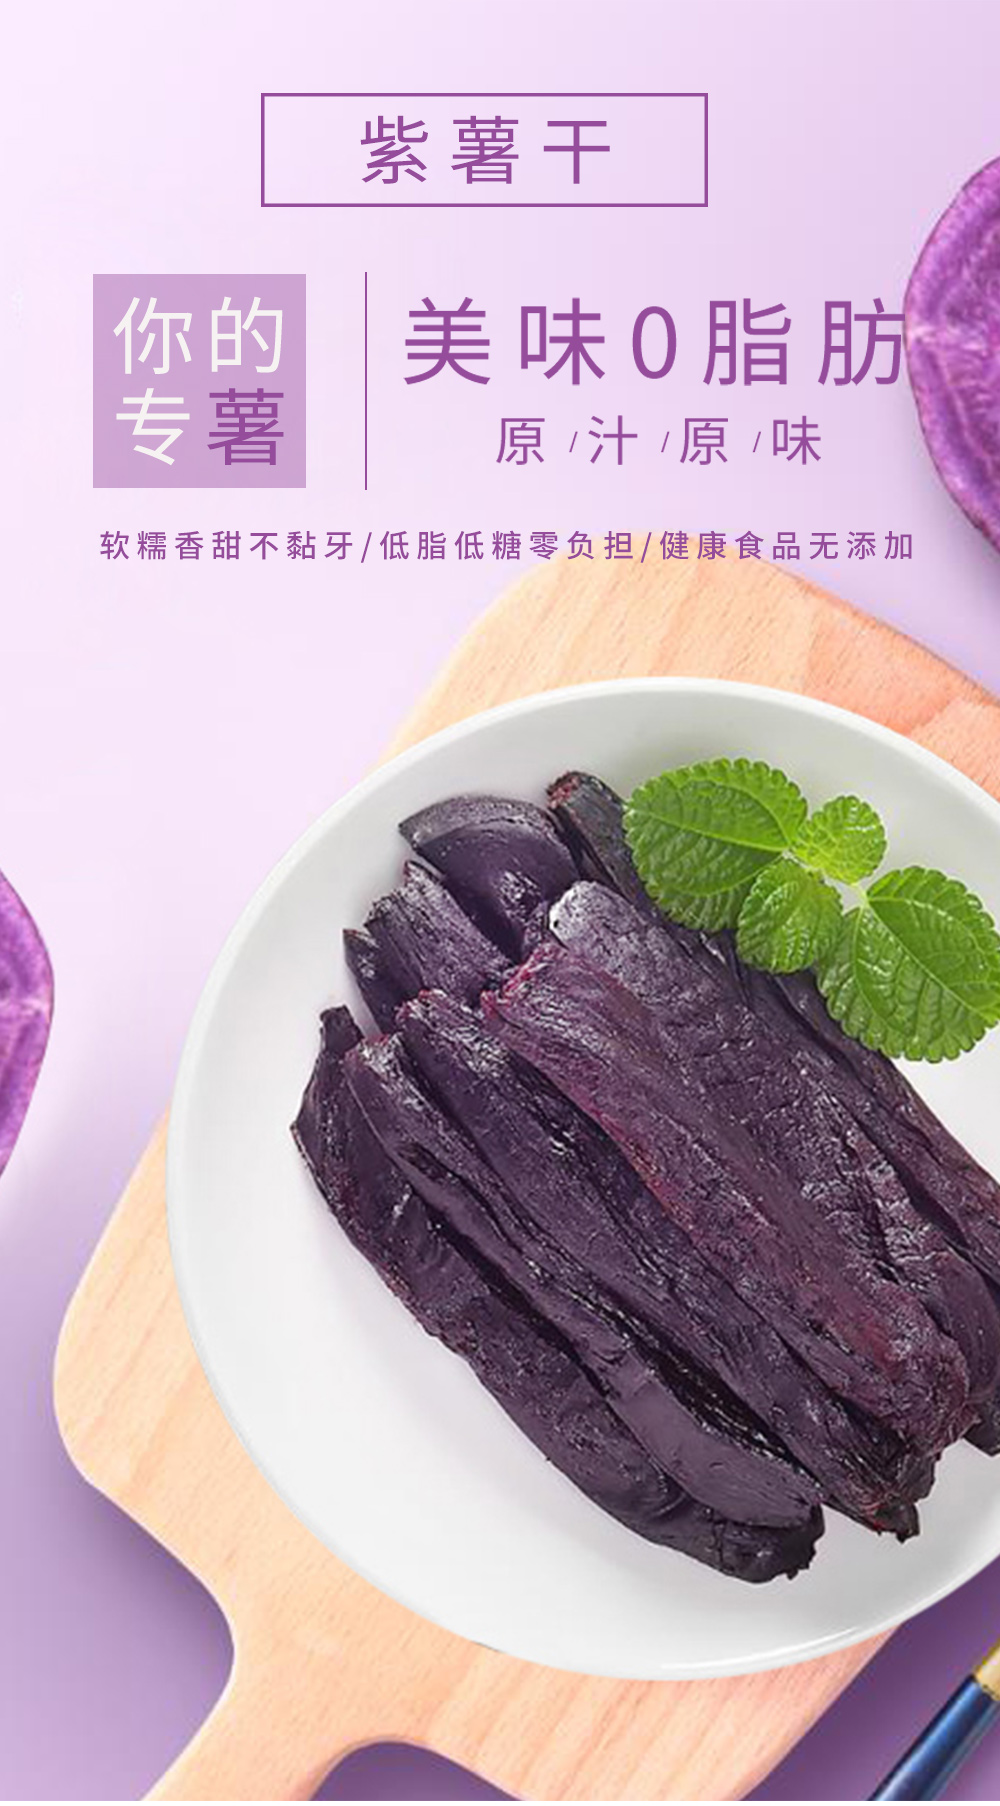 紫薯干属于散装初级农产品,为方便运输,在发货前会打包成真空包装.